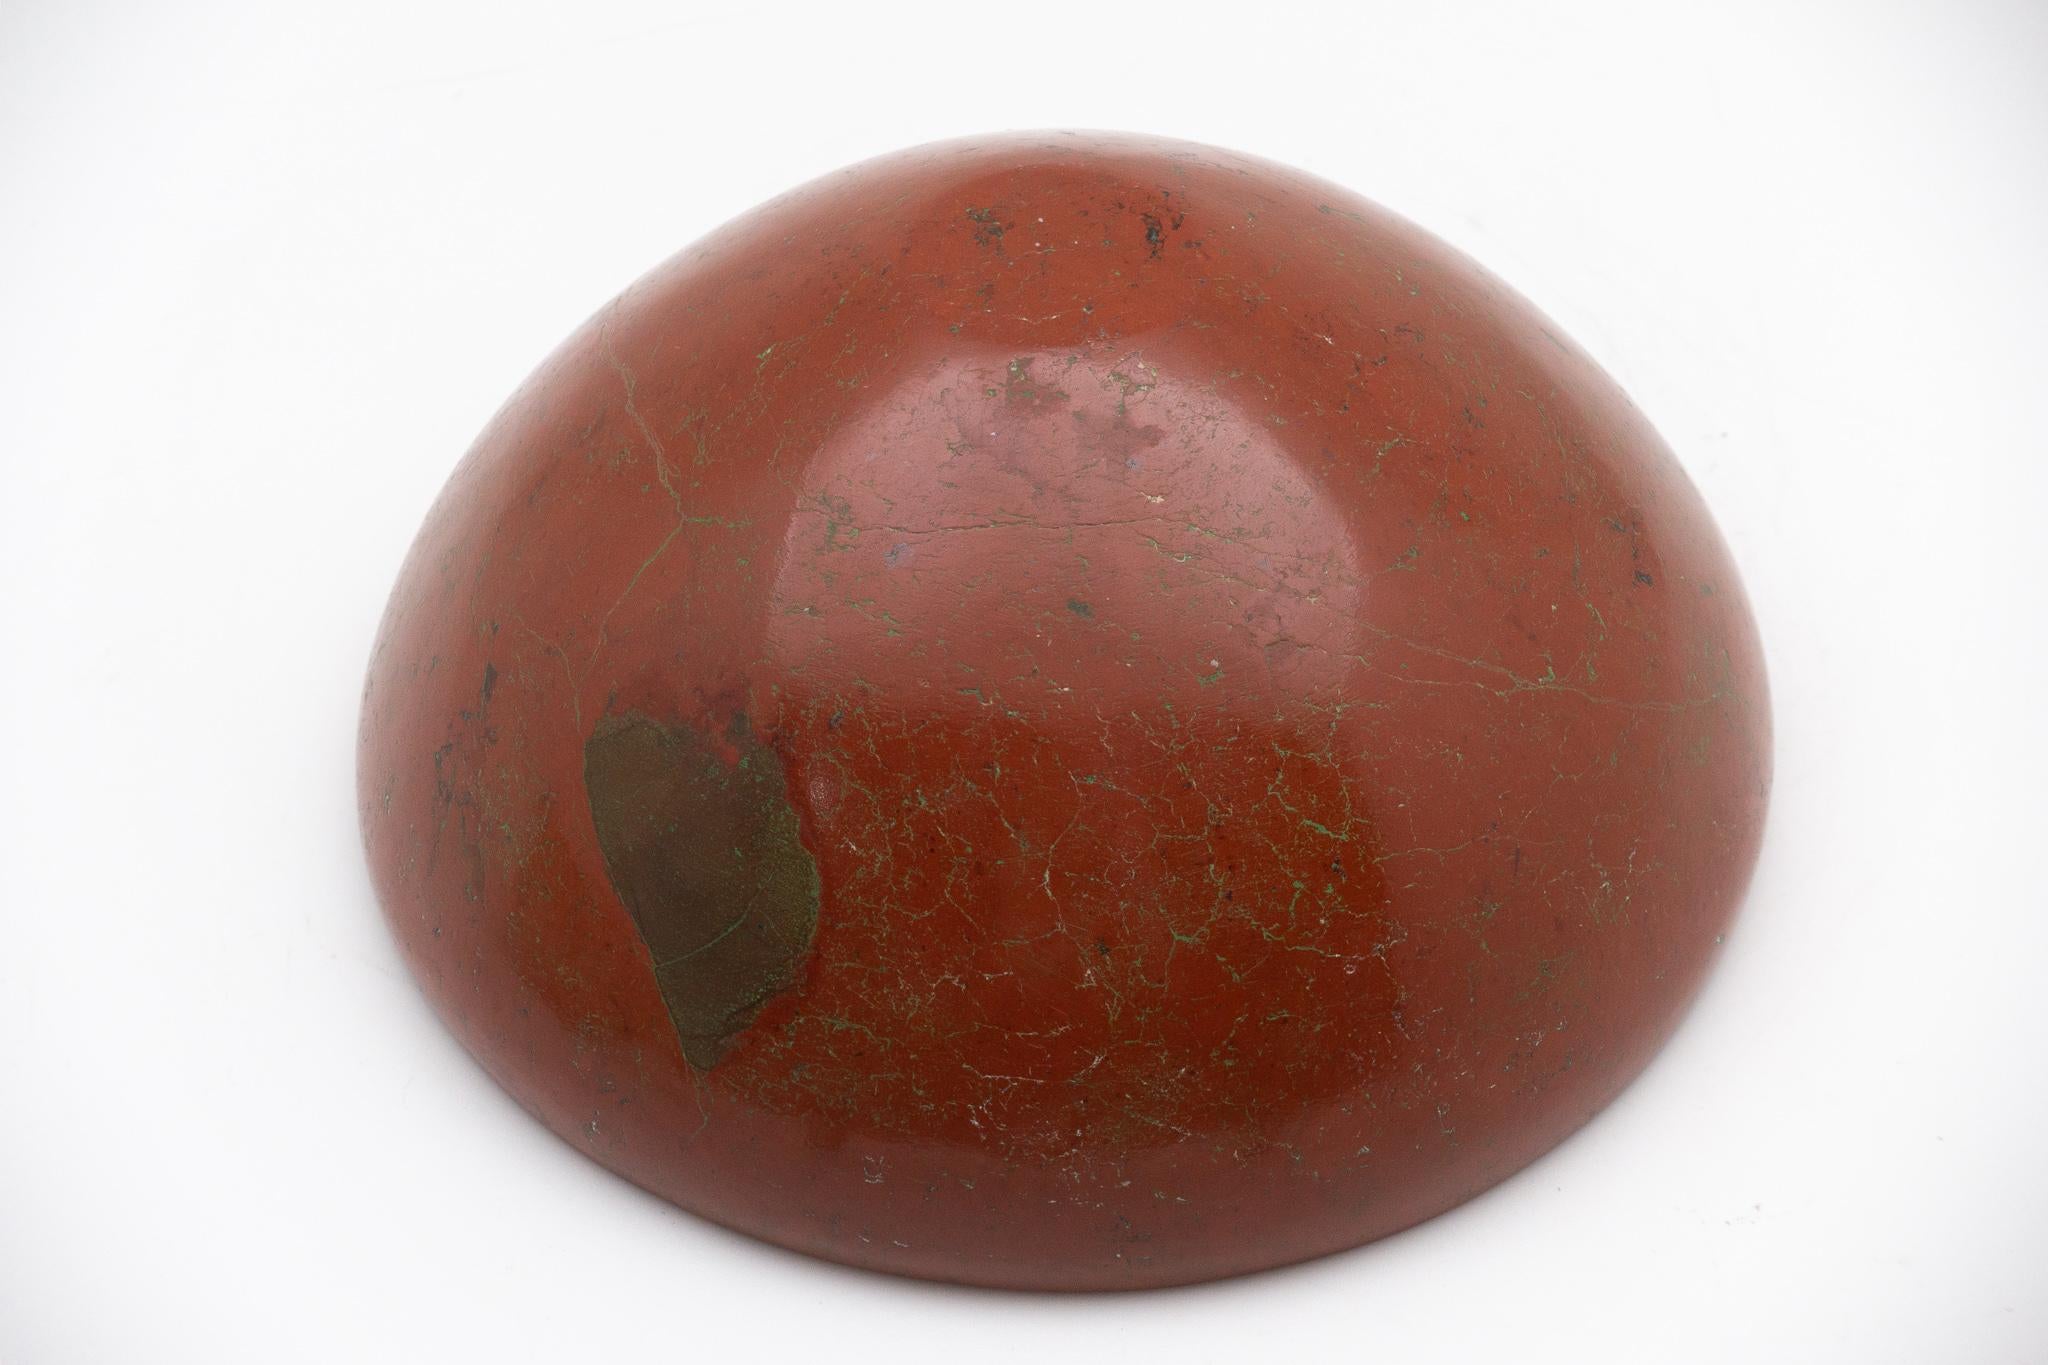 Sculptée et polie à la main dans une pierre de jaspe rouge. Ce grand bol de 6 pouces a été fabriqué par des artisans en Inde, formés de génération en génération à l'art de la sculpture sur pierre. Le jaspe rouge est connu comme une pierre de